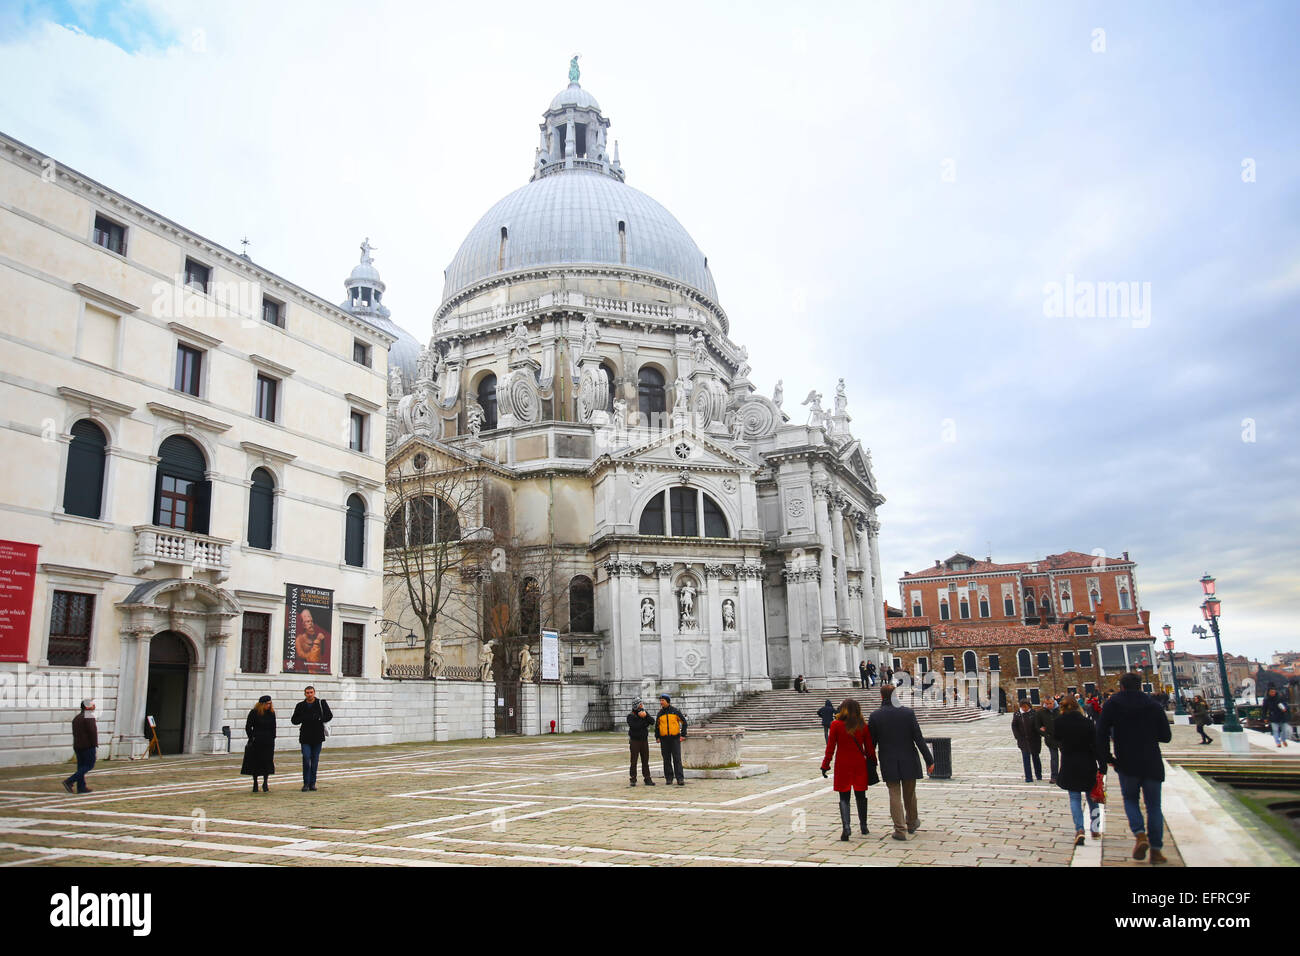 La gente camminare e visita della città di fronte alla chiesa di Santa Maria della Salute, dal canal Grande a Venezia, Italia. Foto Stock